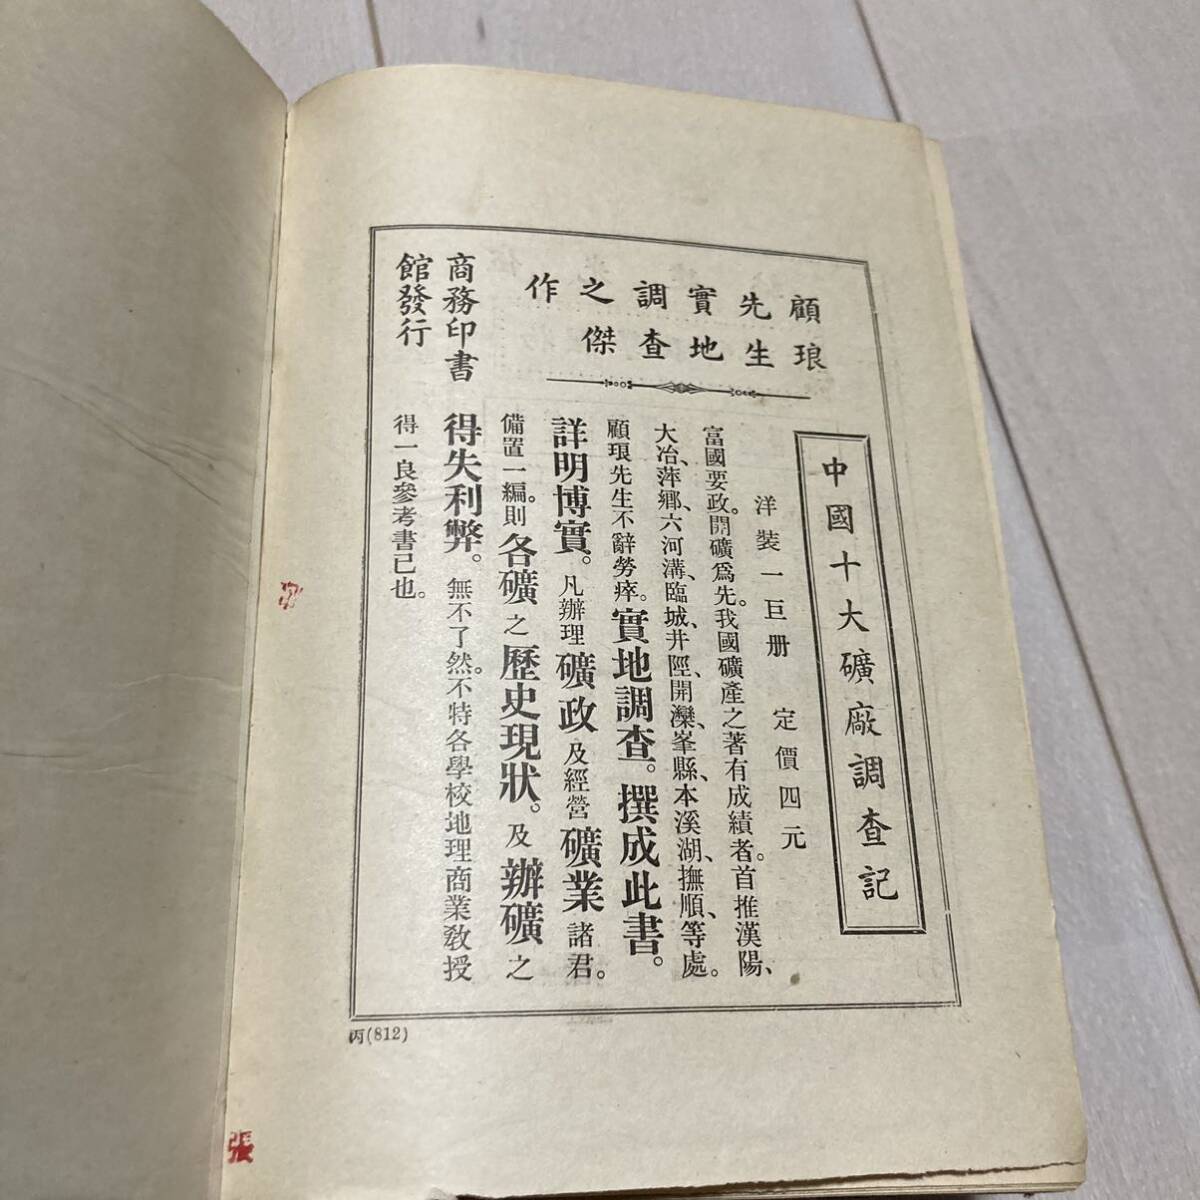 J Tang книга@. печать версия . оборудование книга@ China документ [ растения название ...] все 2 шт. .